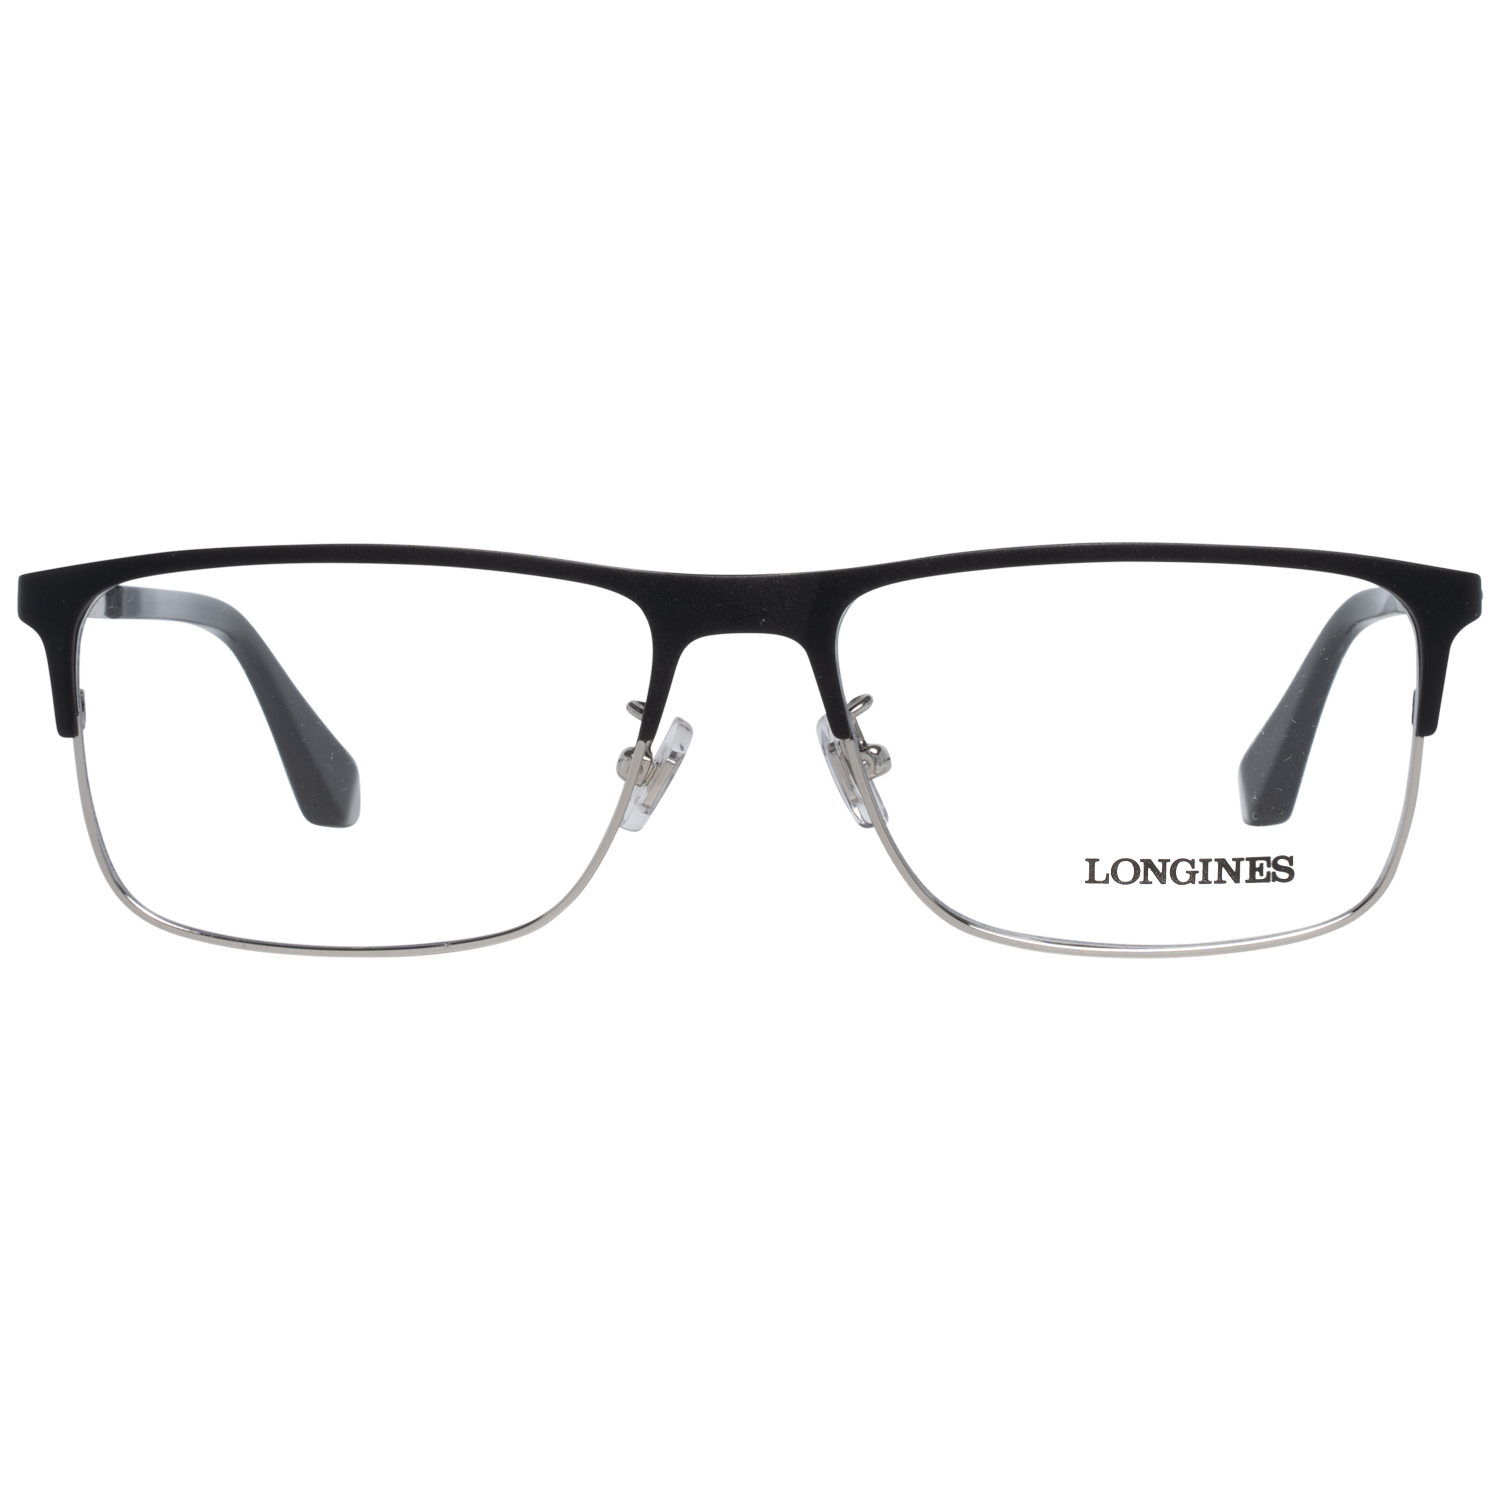 Longines Frames Longines Optical Frame LG5005-H 002 56 Eyeglasses Eyewear UK USA Australia 